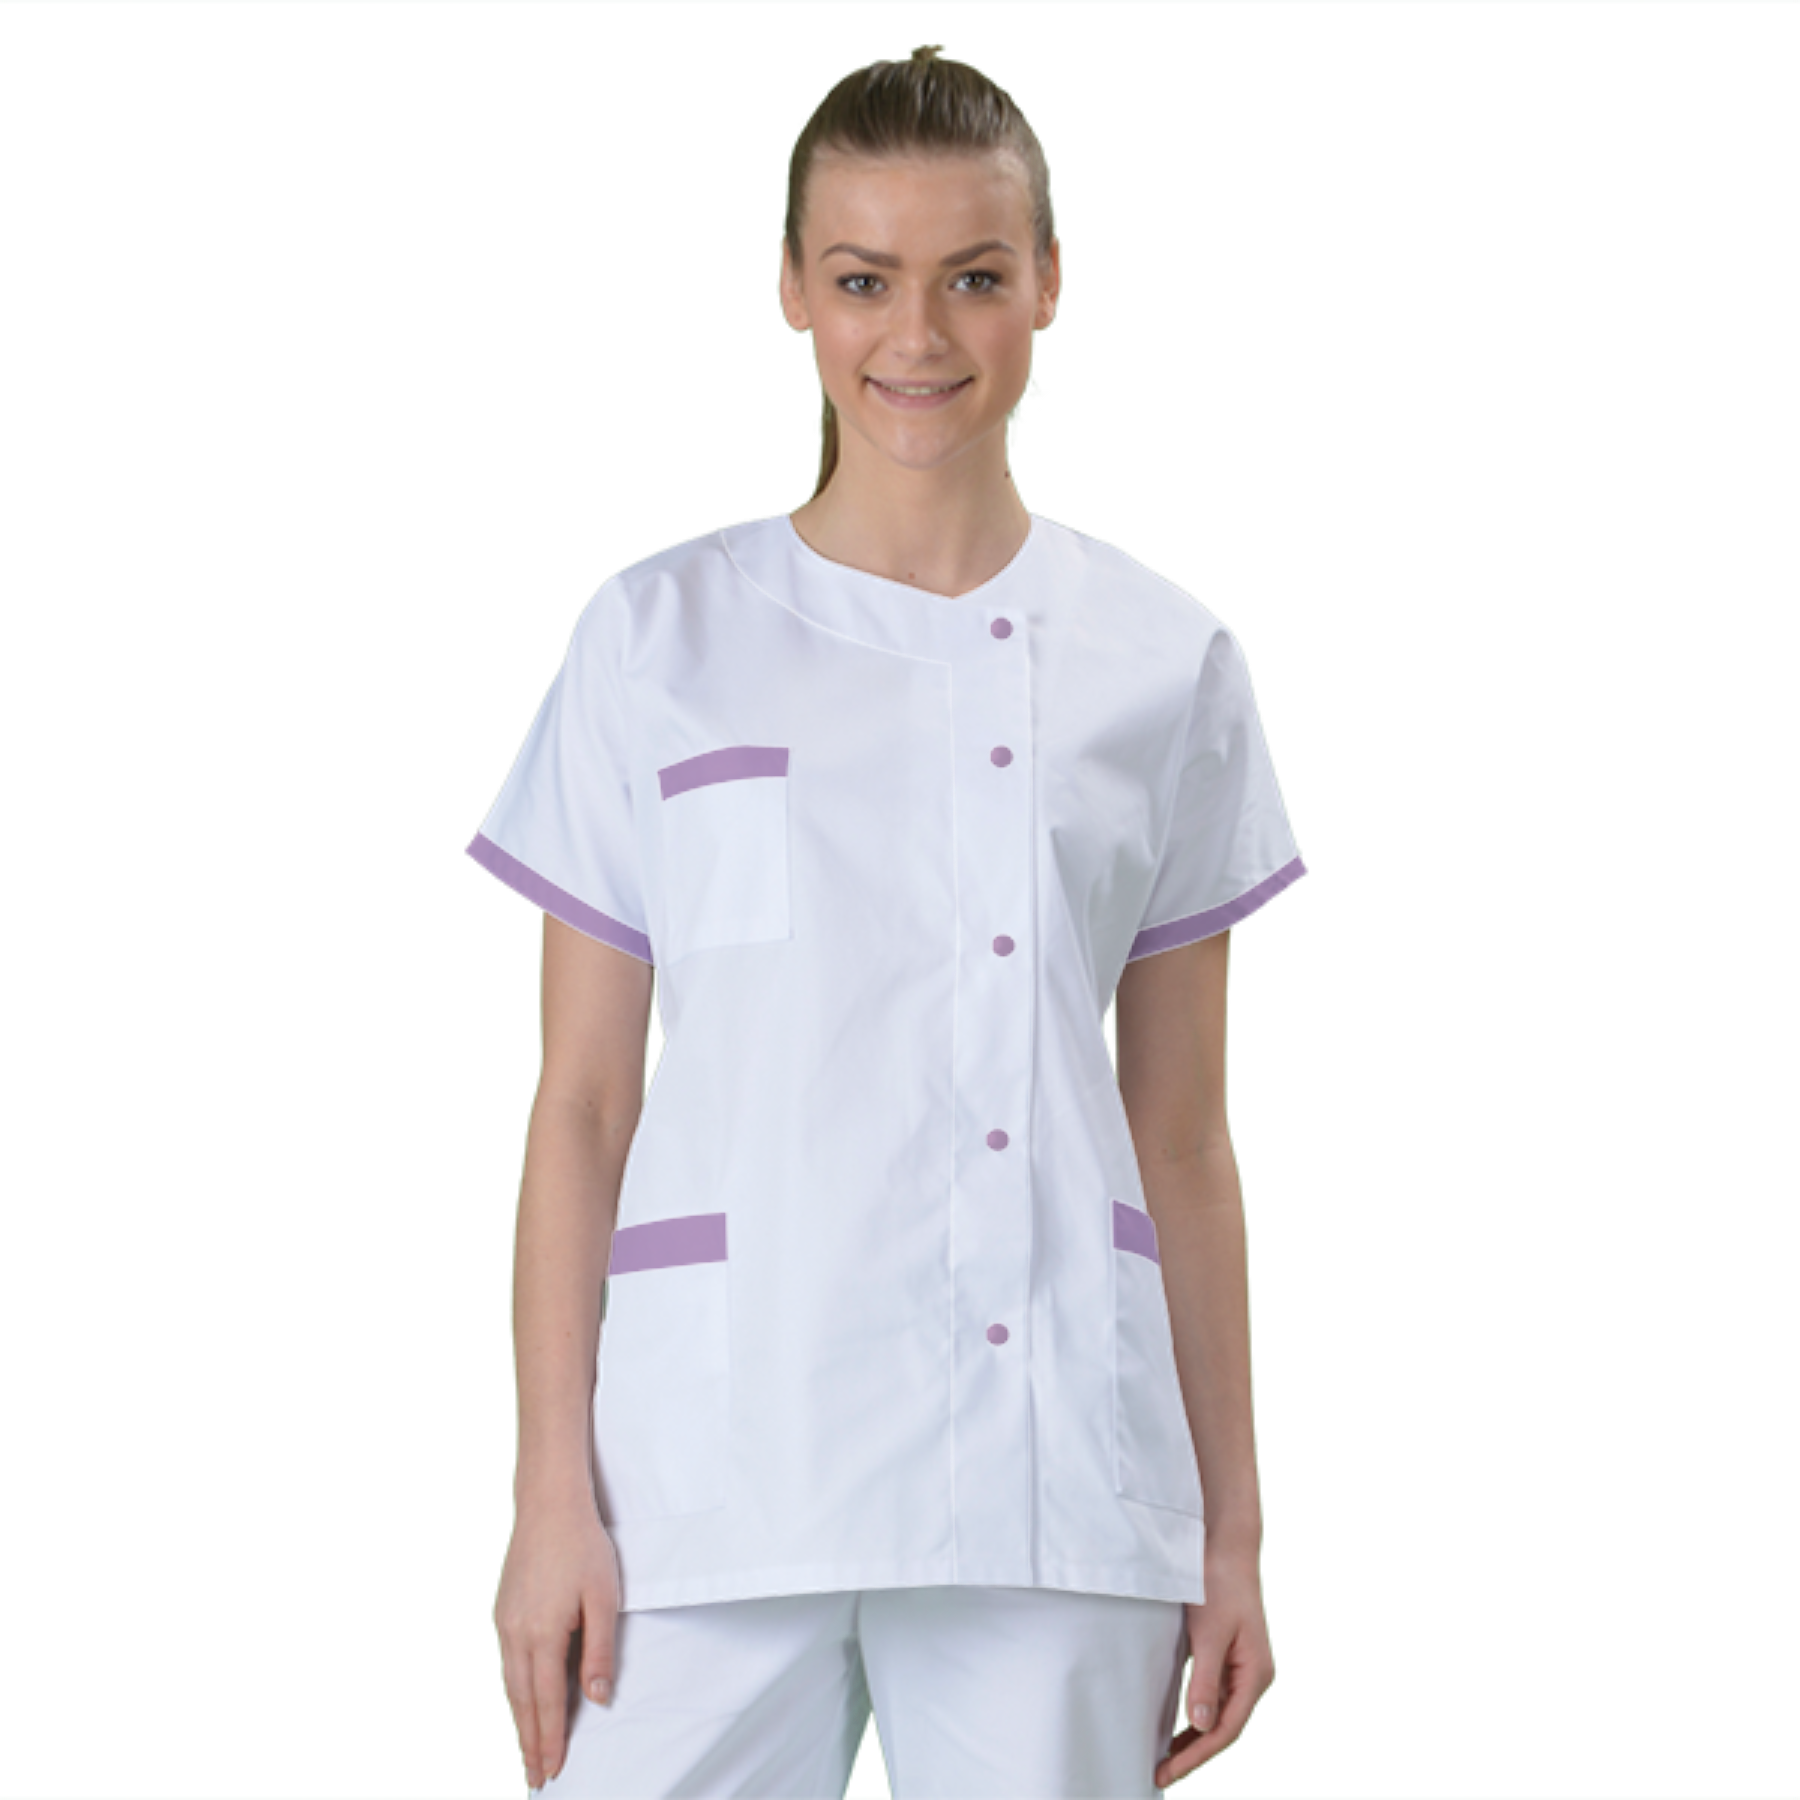 blouse-medicale-col-carre-a-personnaliser acheté - par Margaux - le 20-05-2022